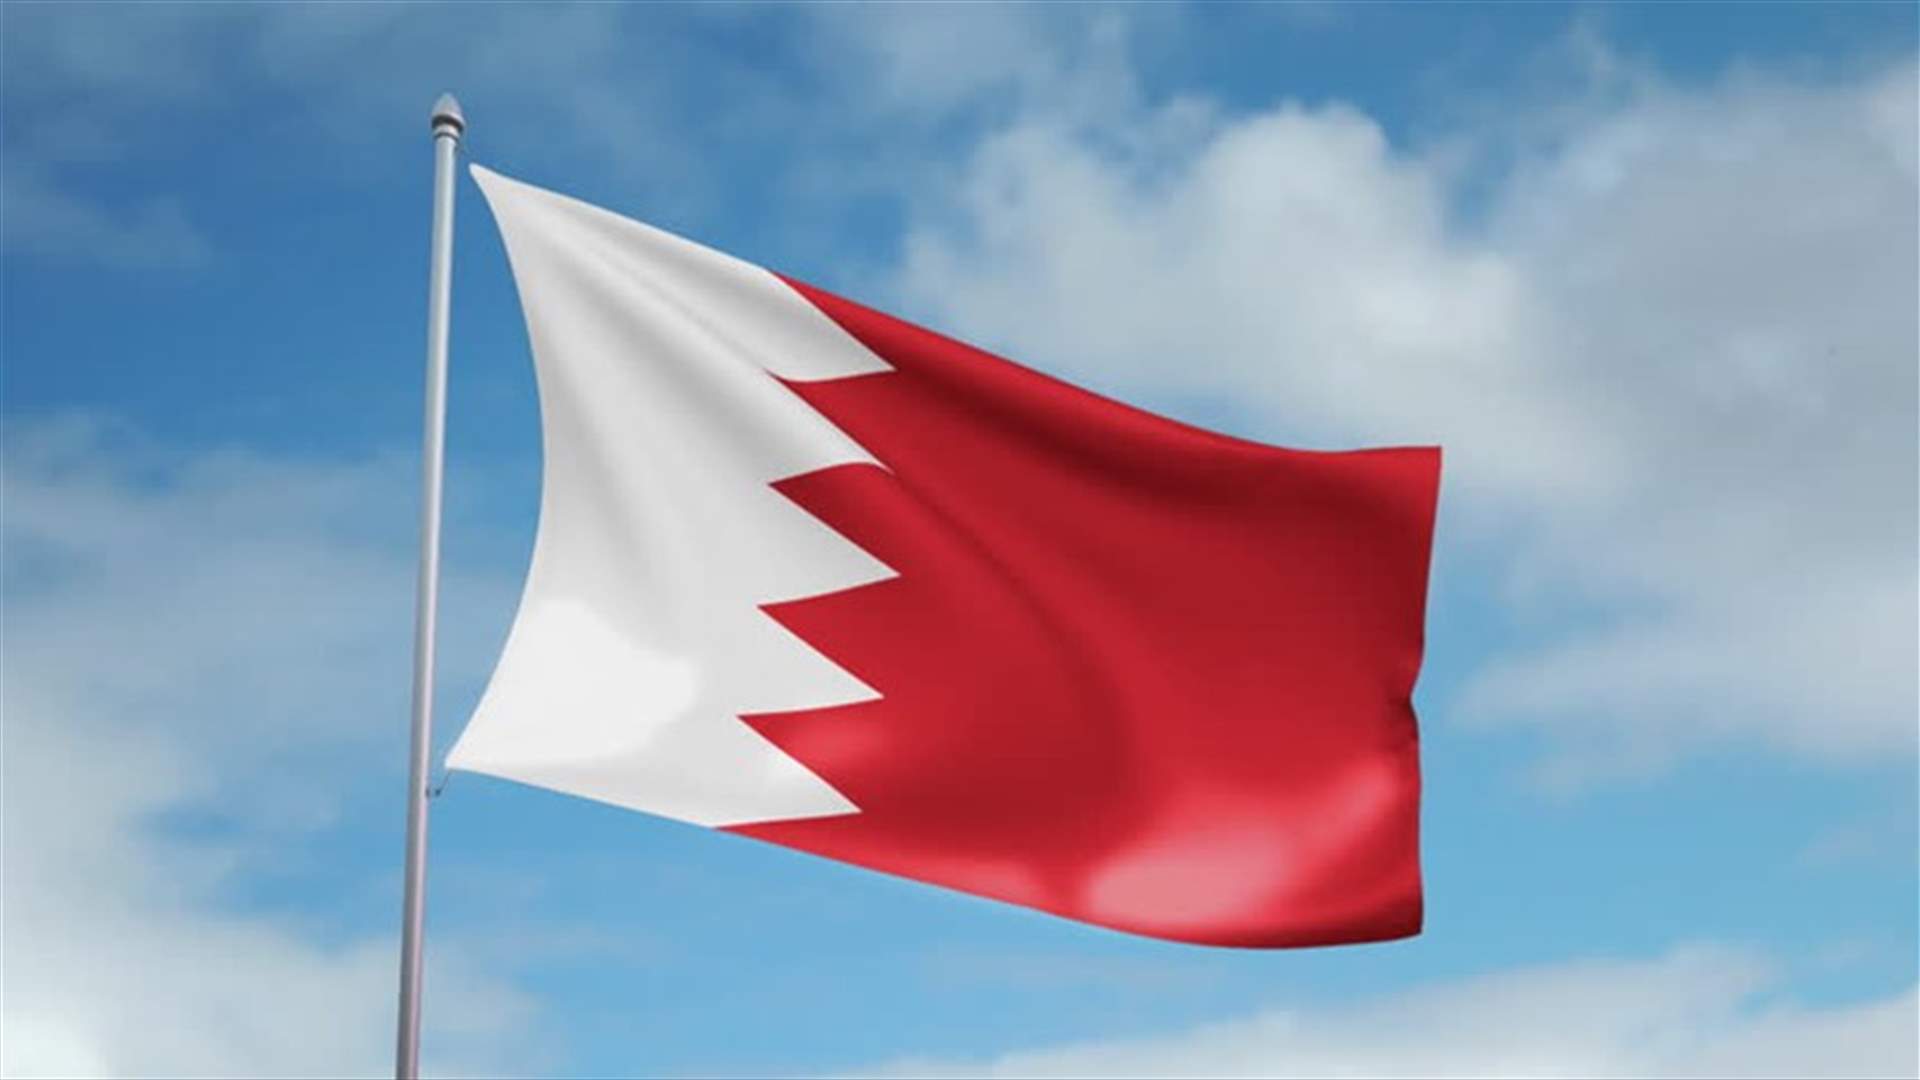 البحرين تشيد باهتمام الملك سلمان لكشف الحقائق بكل نزاهة